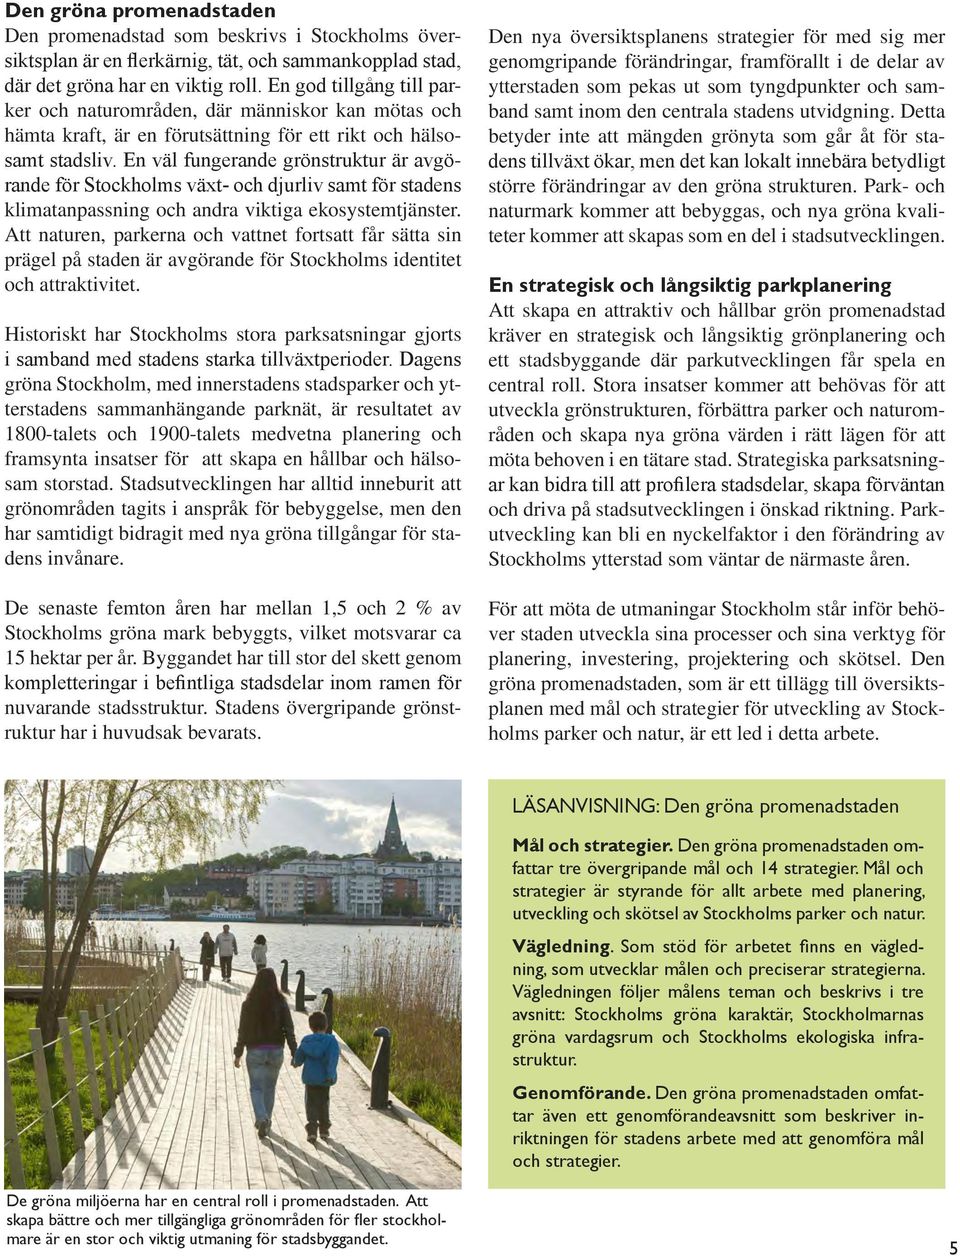 En väl fungerande grönstruktur är avgörande för Stockholms växt- och djurliv samt för stadens klimatanpassning och andra viktiga ekosystemtjänster.